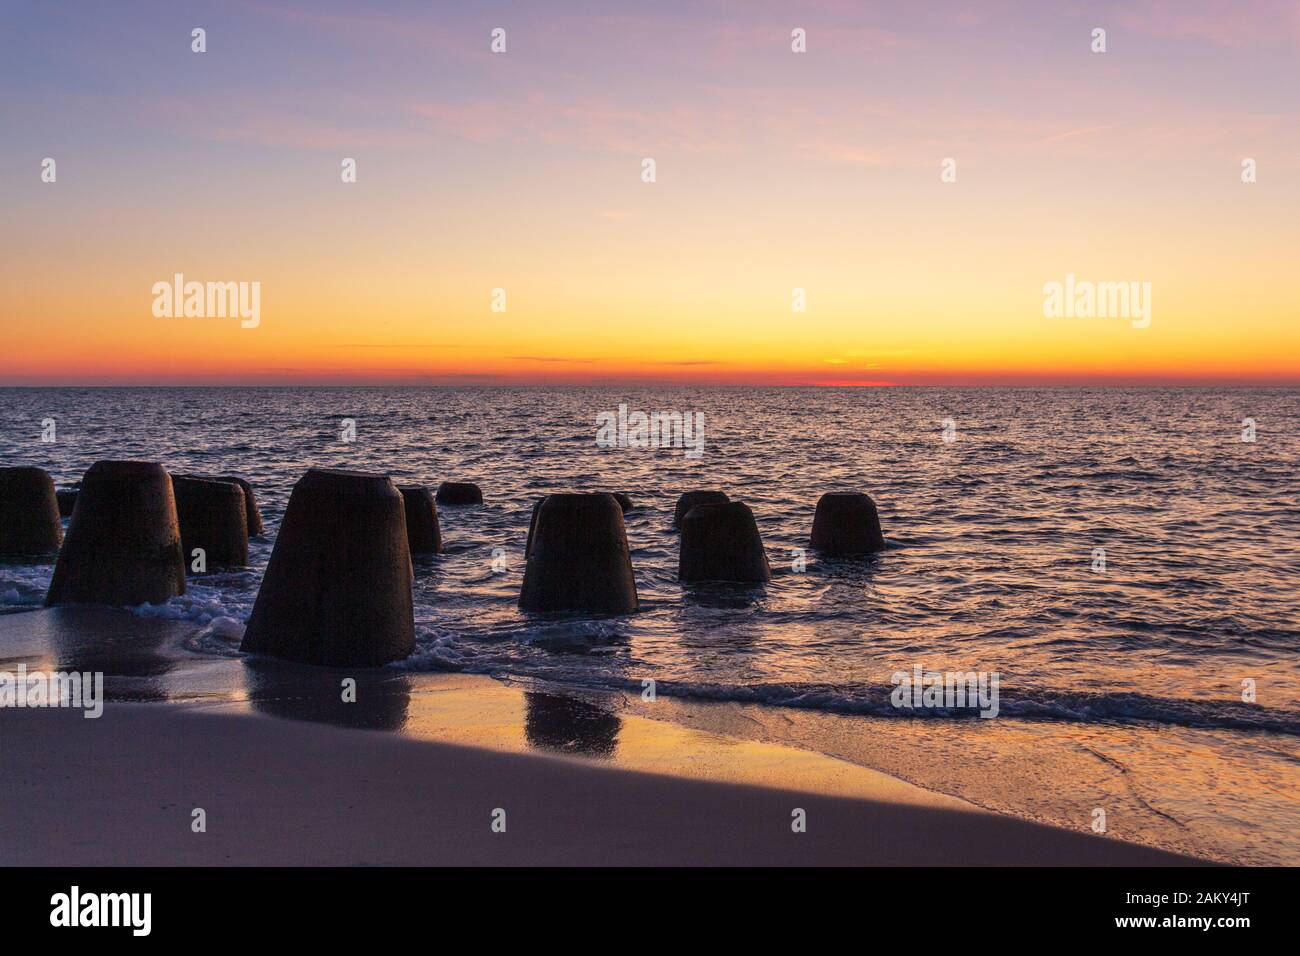 Tetrapods am Strand von Sylt Island bei Sonnenuntergang Stockfoto